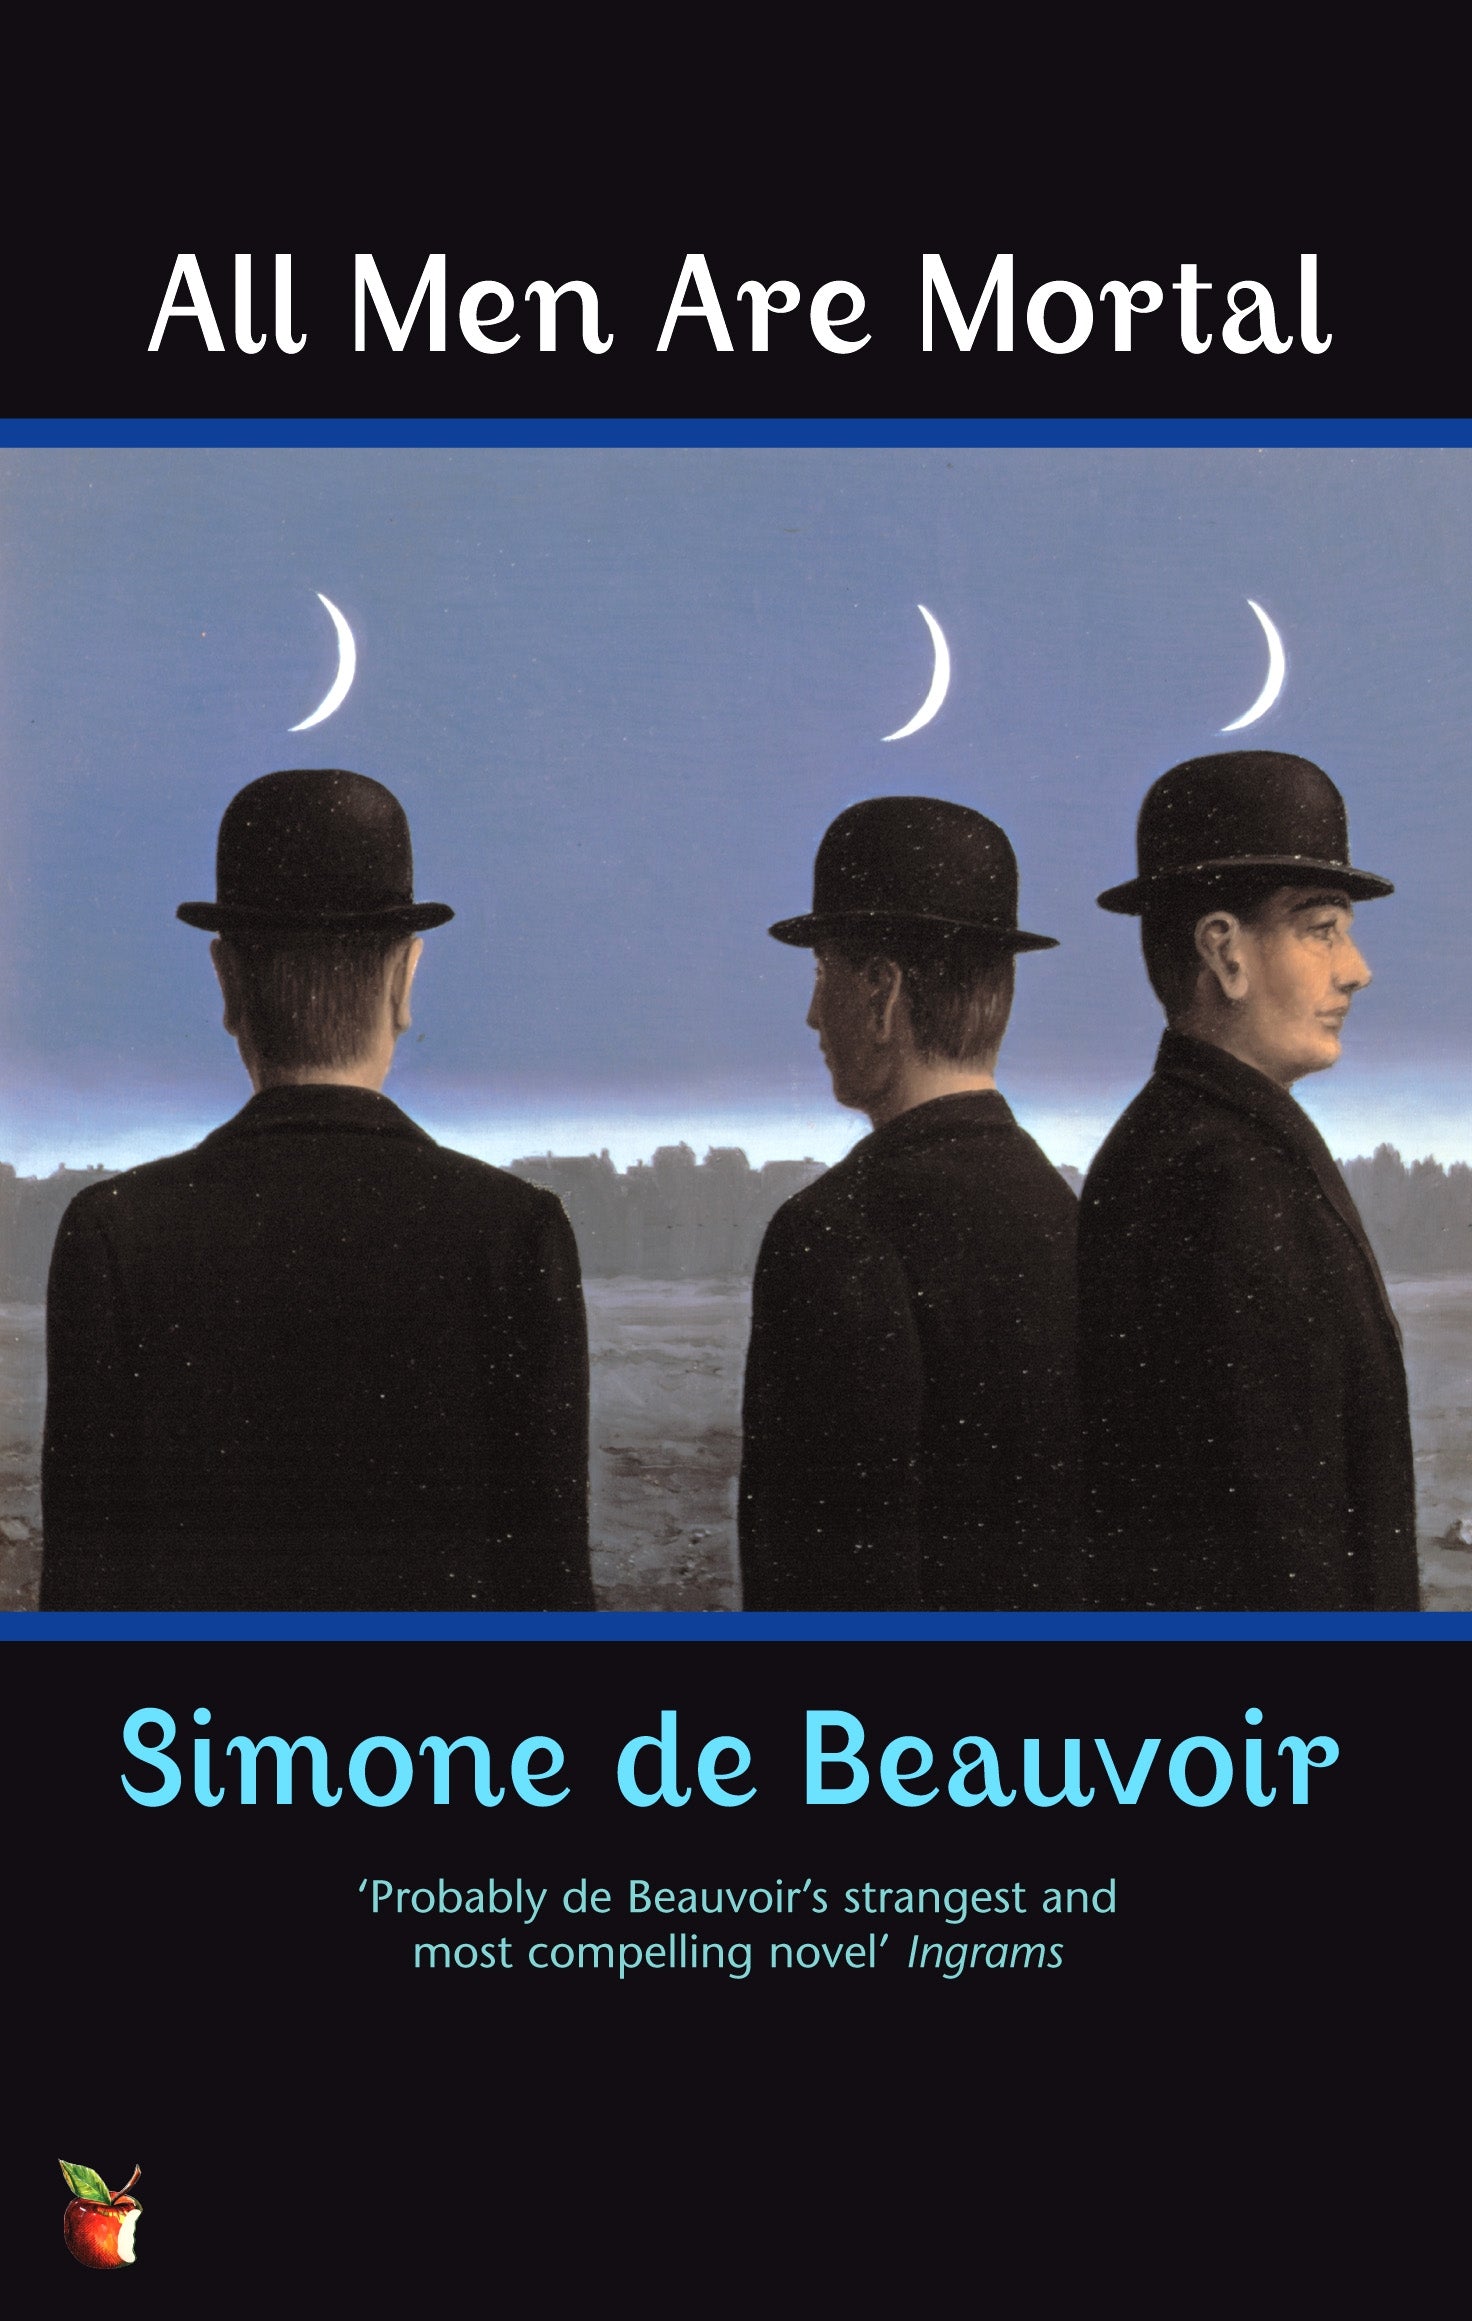 All Men Are Mortal by Simone de Beauvoir